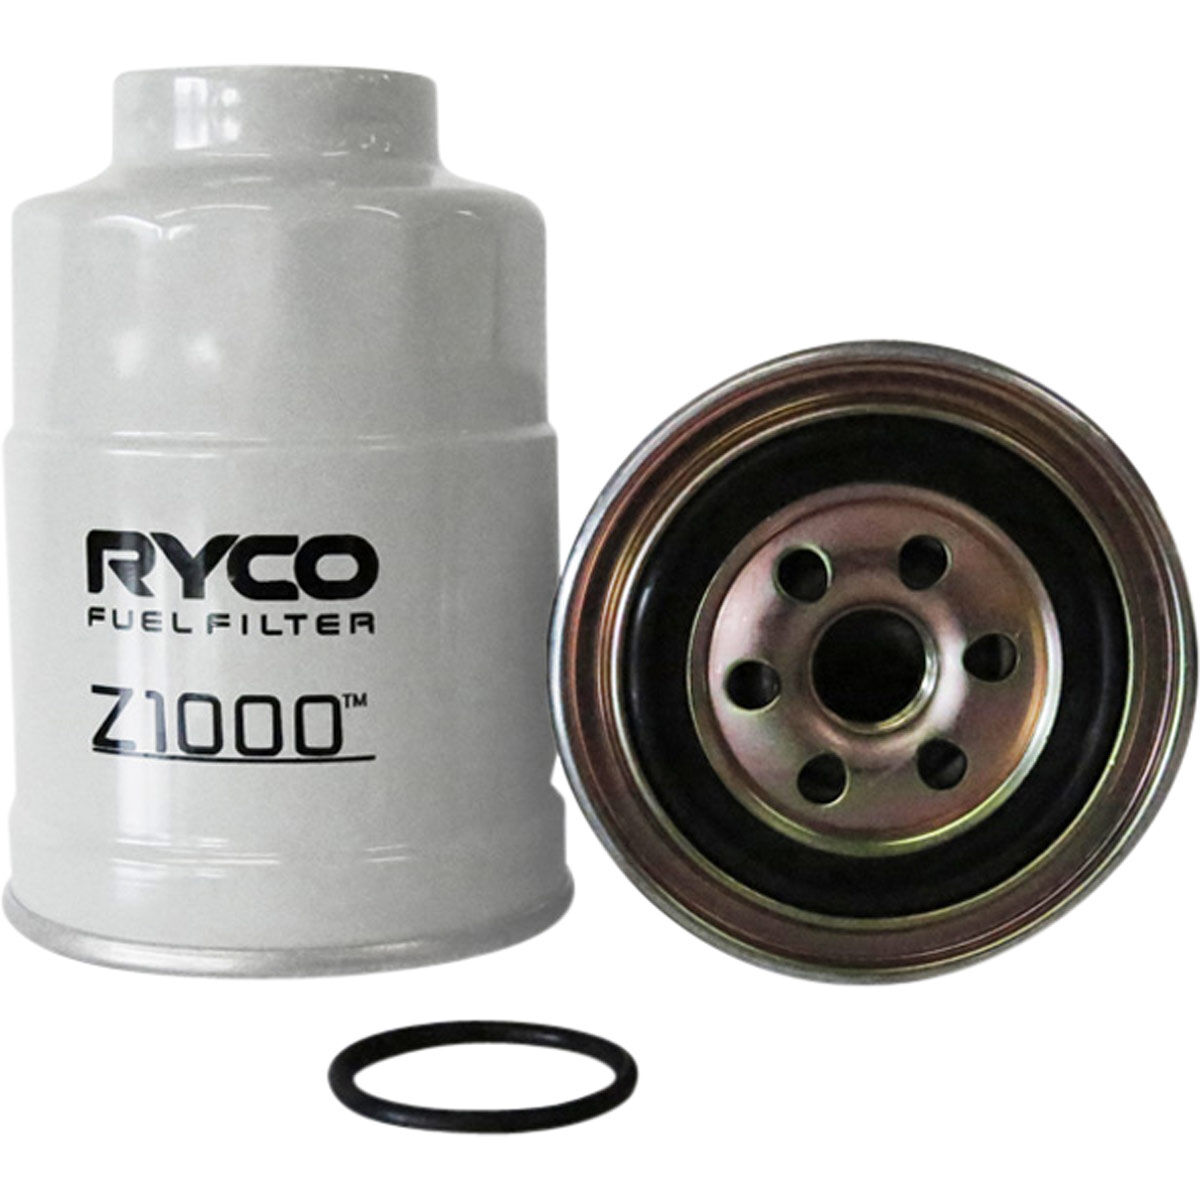 Ryco Fuel Filter - Z1000, , scaau_hi-res